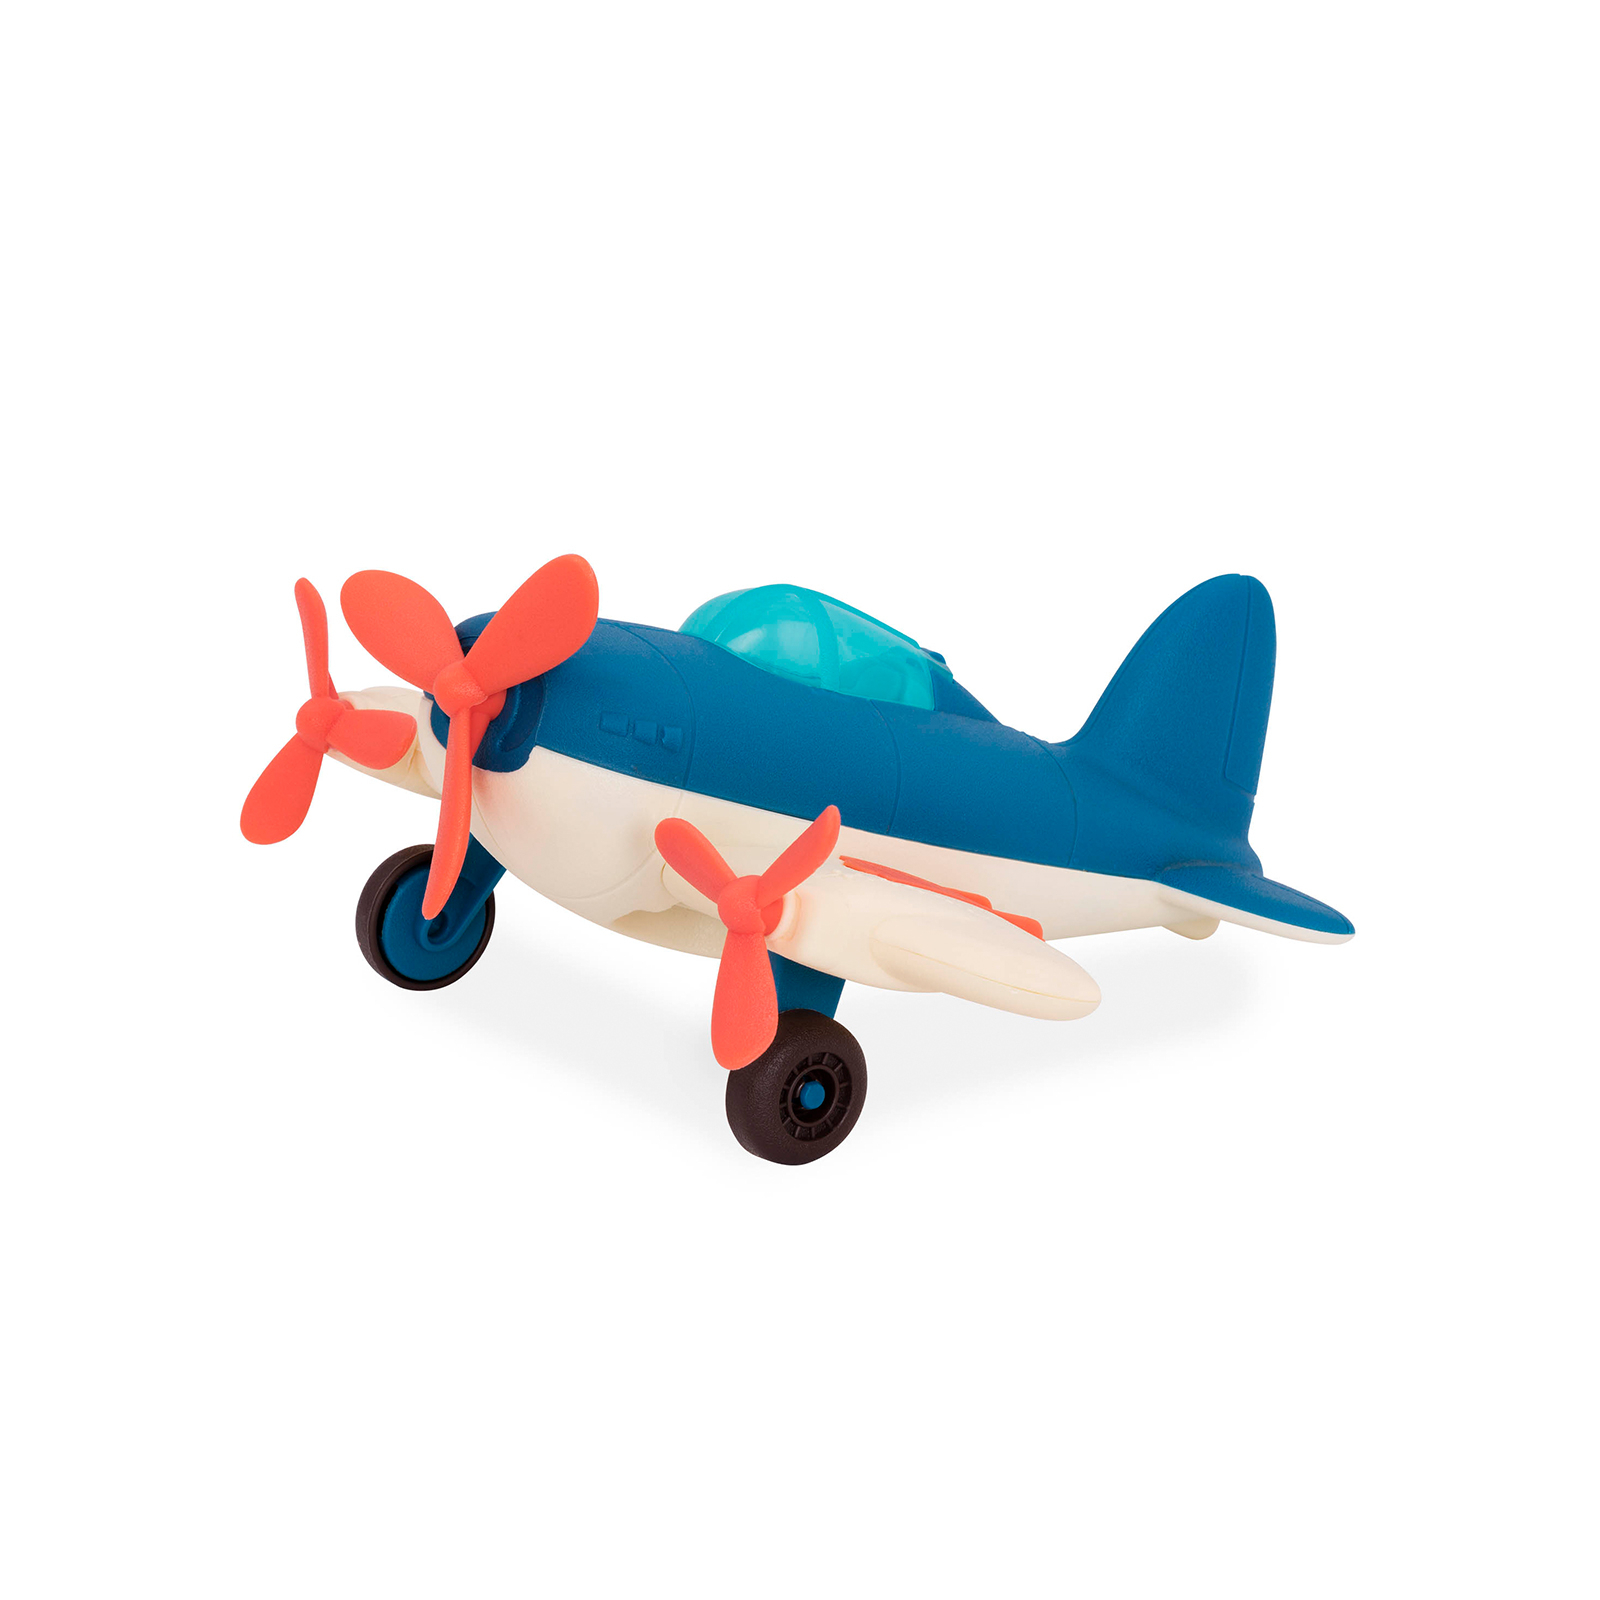 Развивающая игрушка Battat Баттатолет Самолет (BX1729Z)